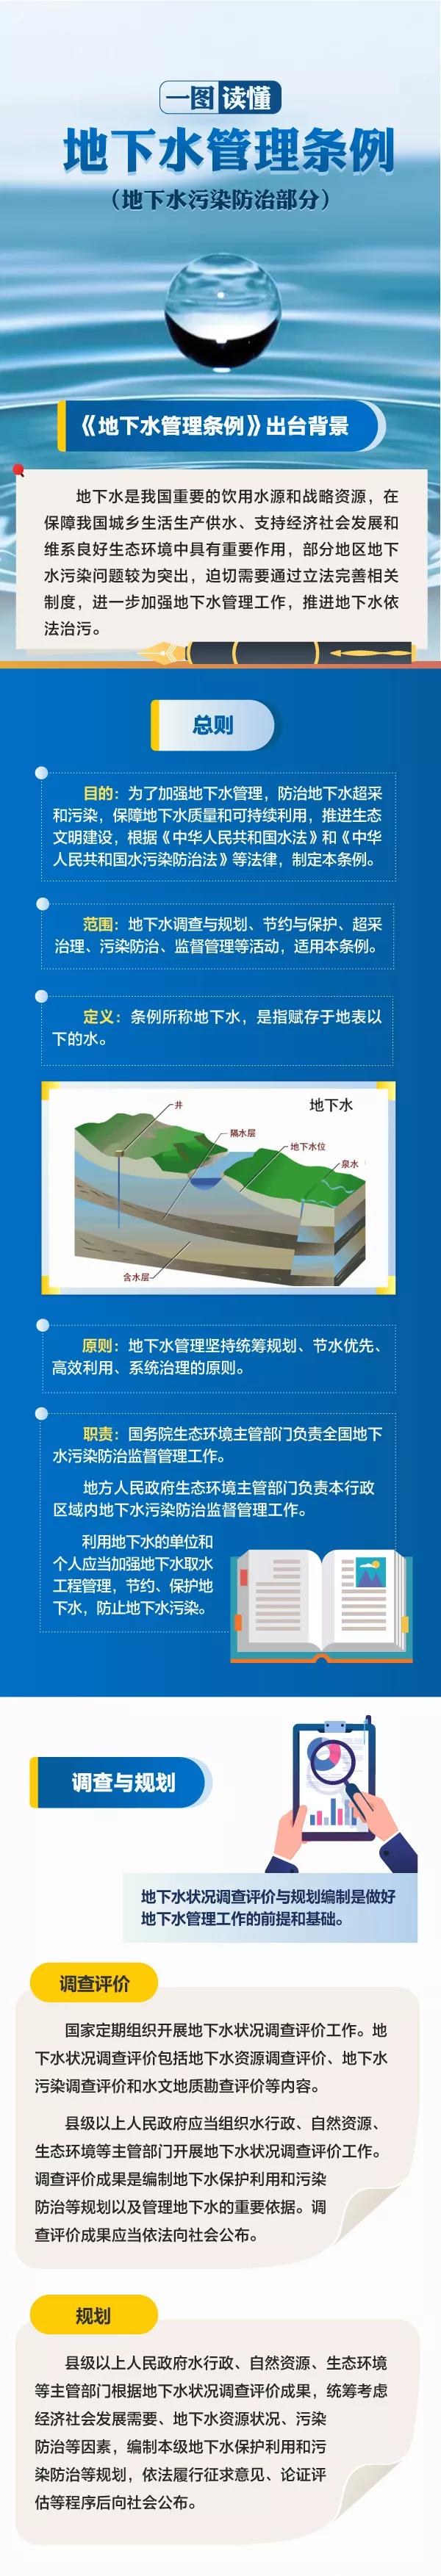 图说地下水管理条例.jpg